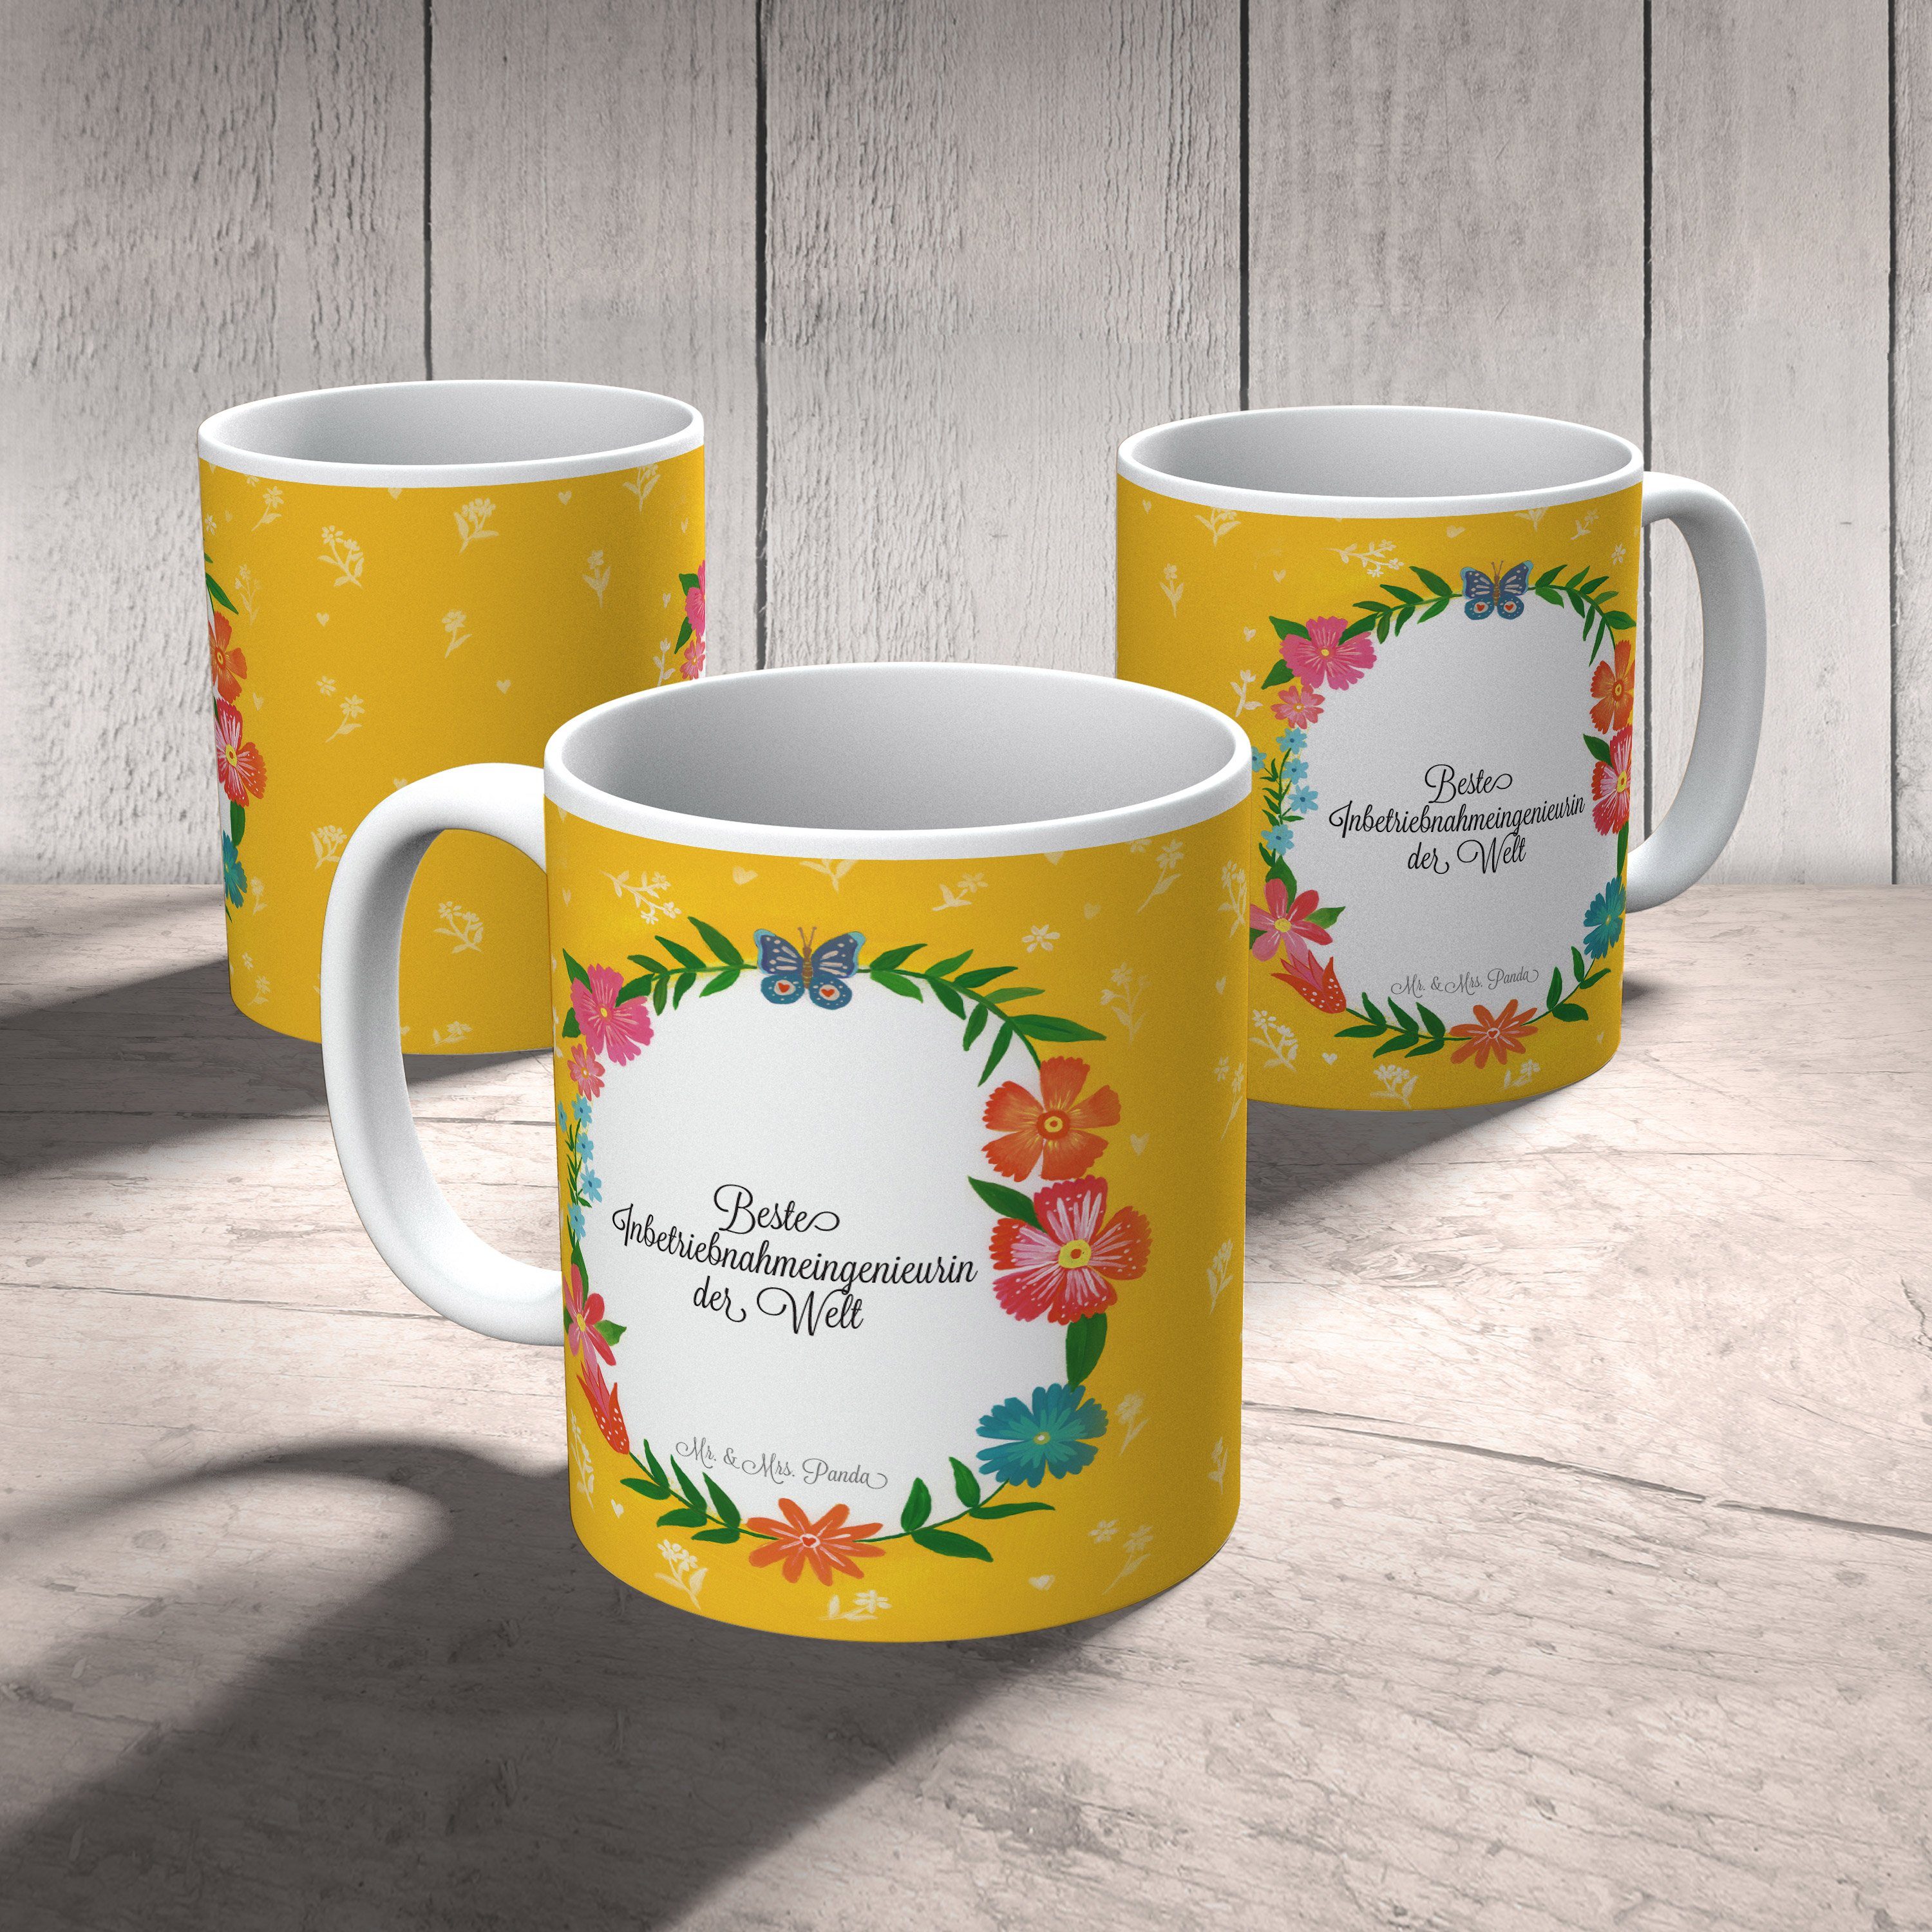 Mr. & Mrs. Panda Tasse Keramik Geschenk, Inbetriebnahmeingenieurin Tasse, Gratulation, B, - Teetasse